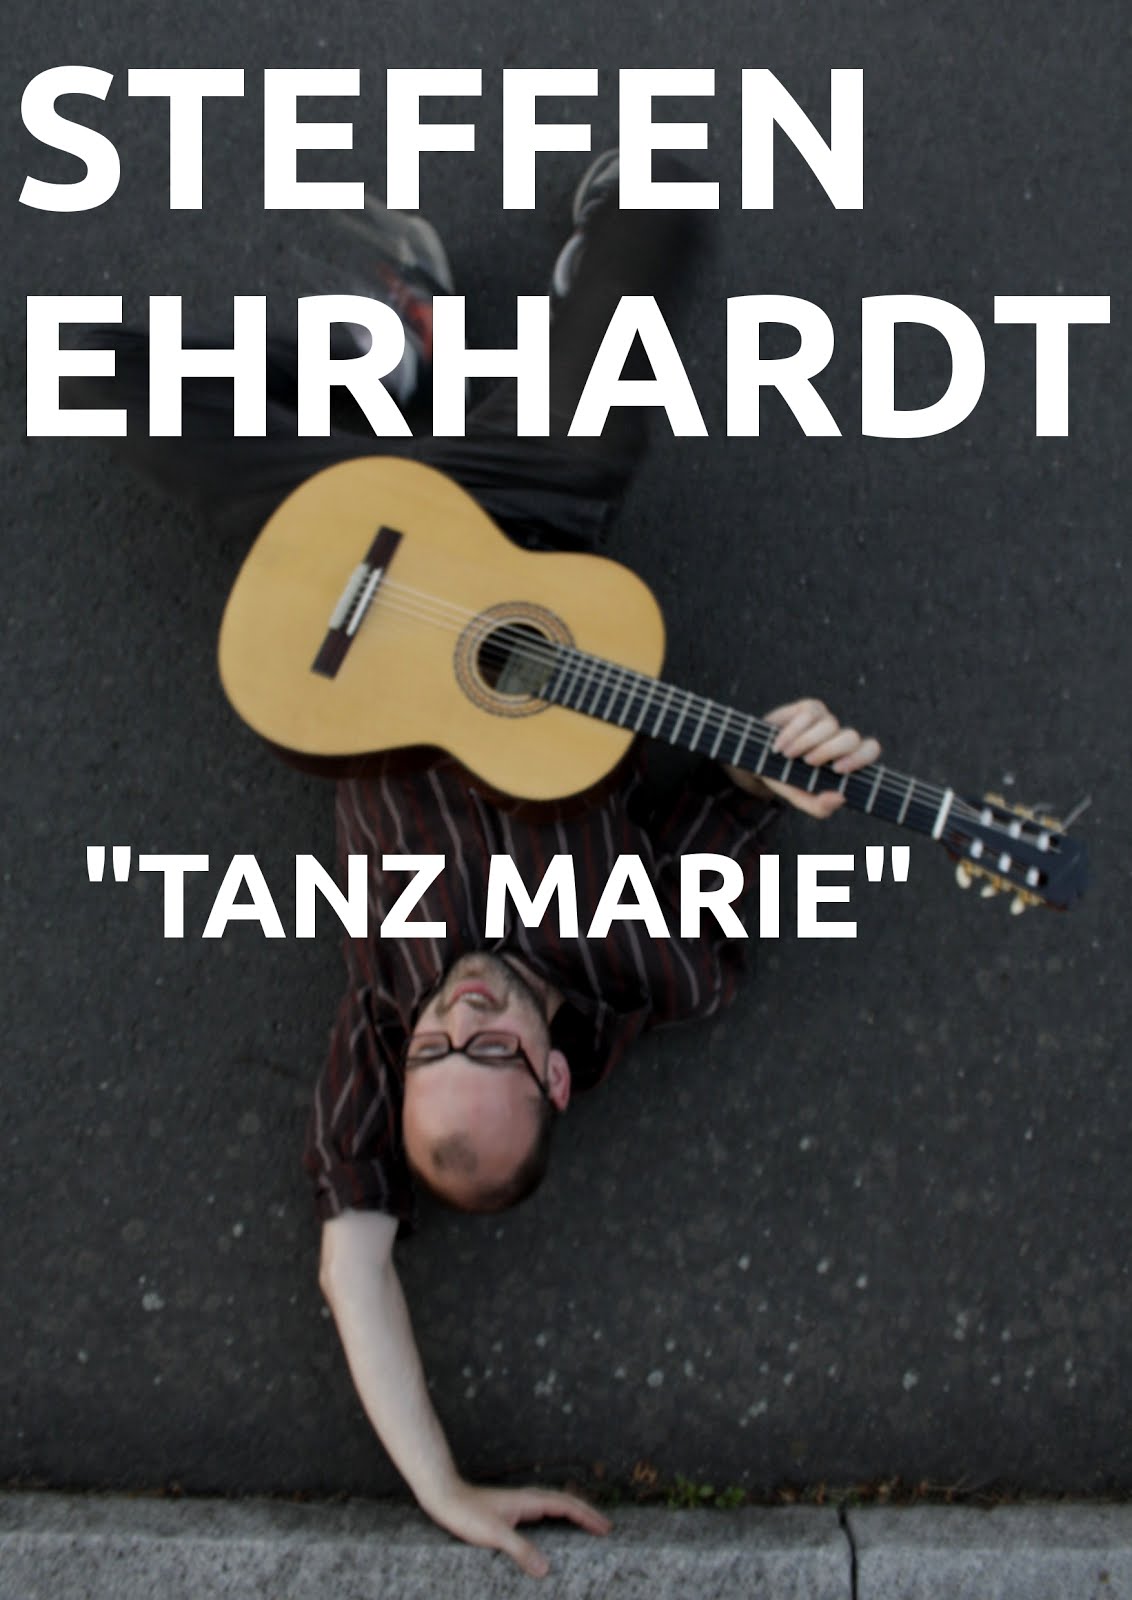 STEFFEN EHRHARDT "TANZ MARIE"